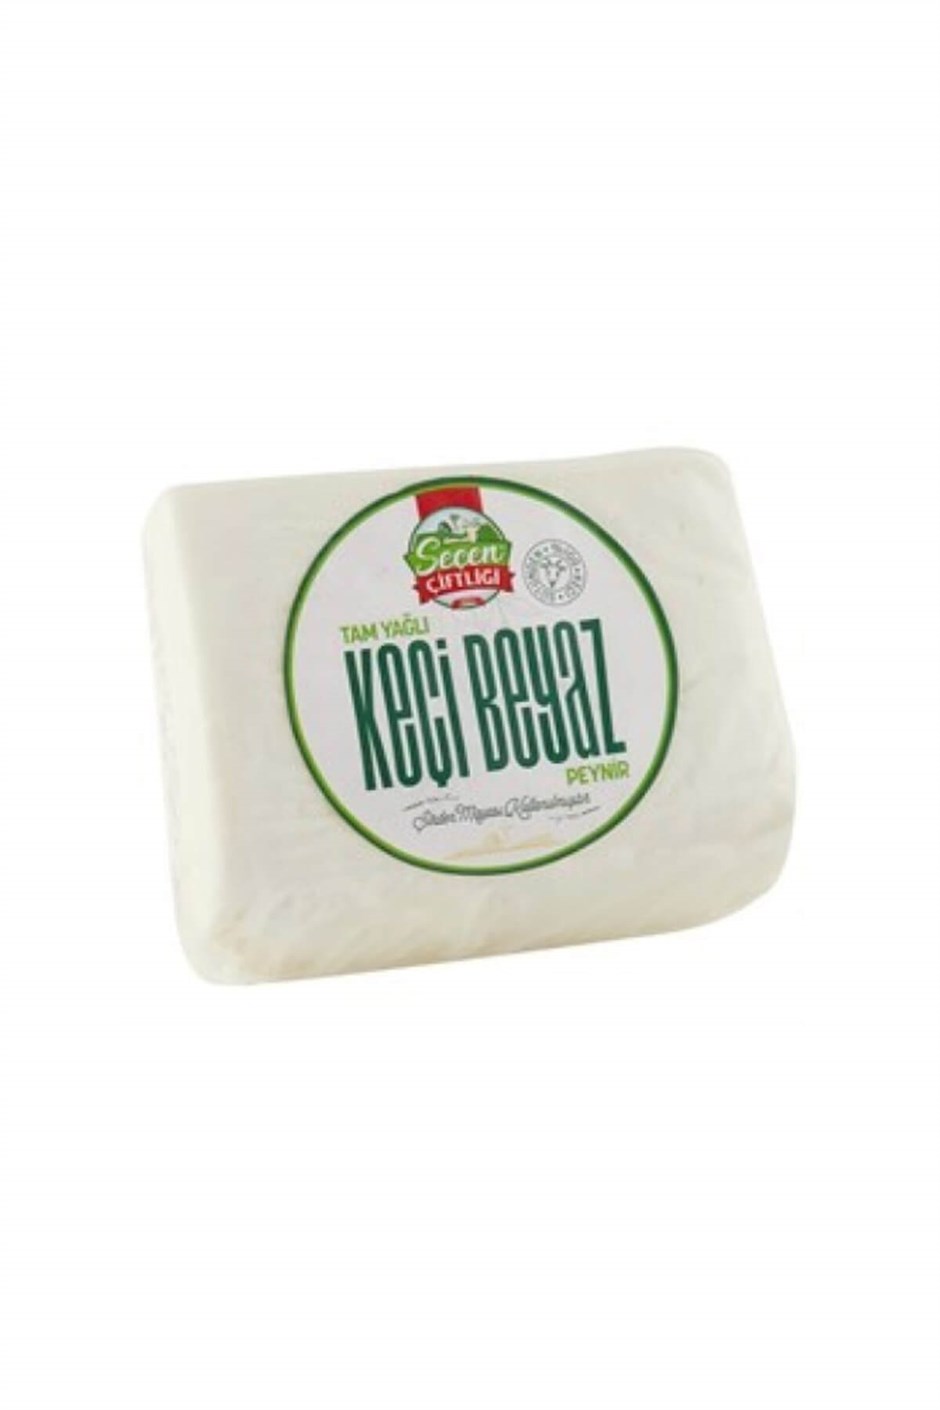 Seçen Çitliği Tam Yağlı Keçi Beyaz Peynir 400 gr